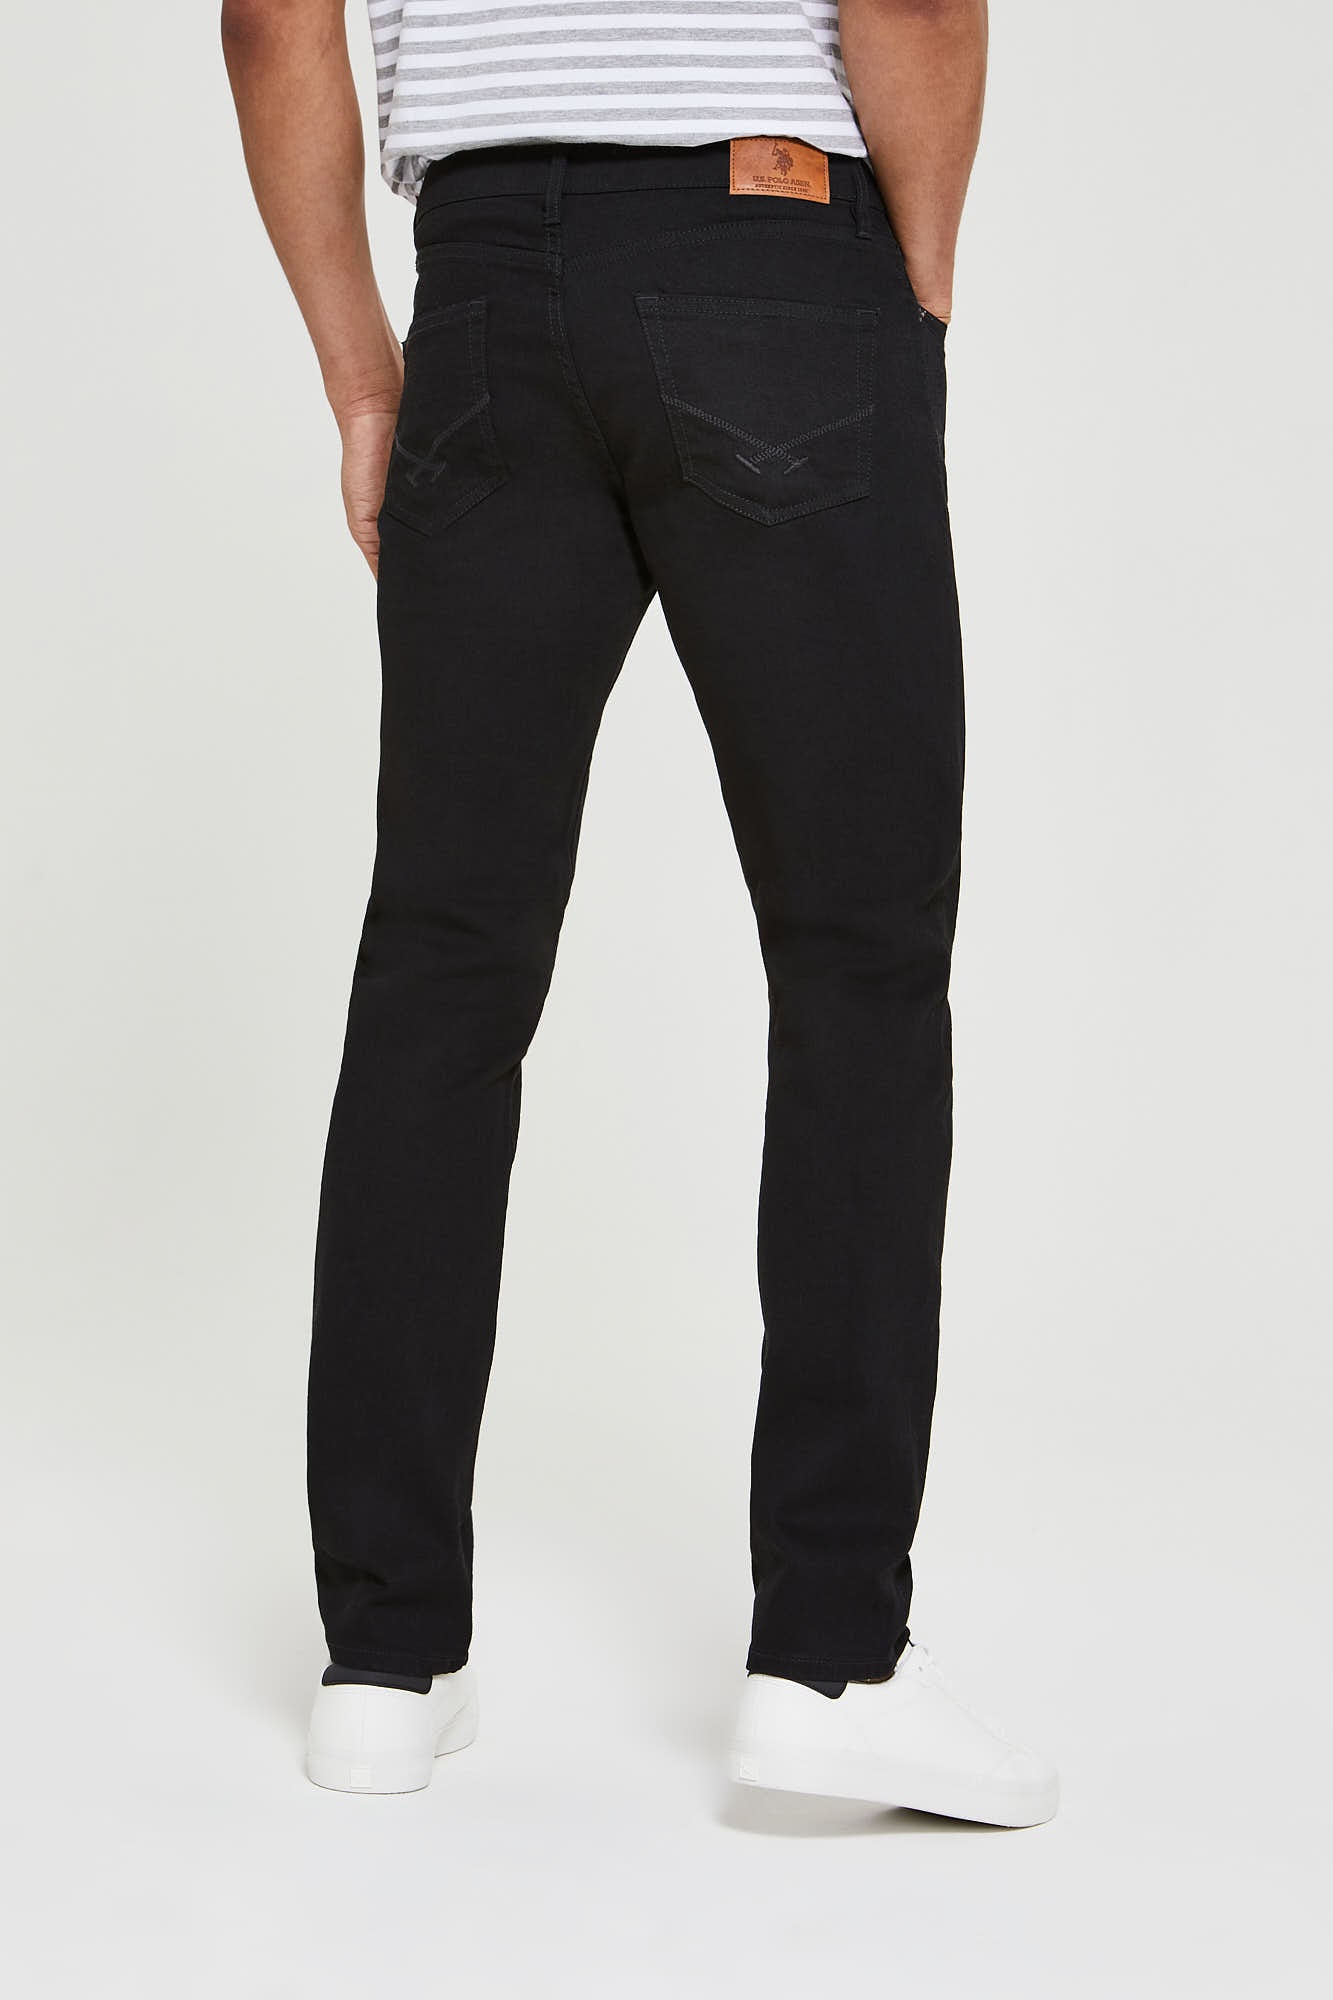 Mens 5 Pocket Slim Fit Denim Jeans in Black Wash